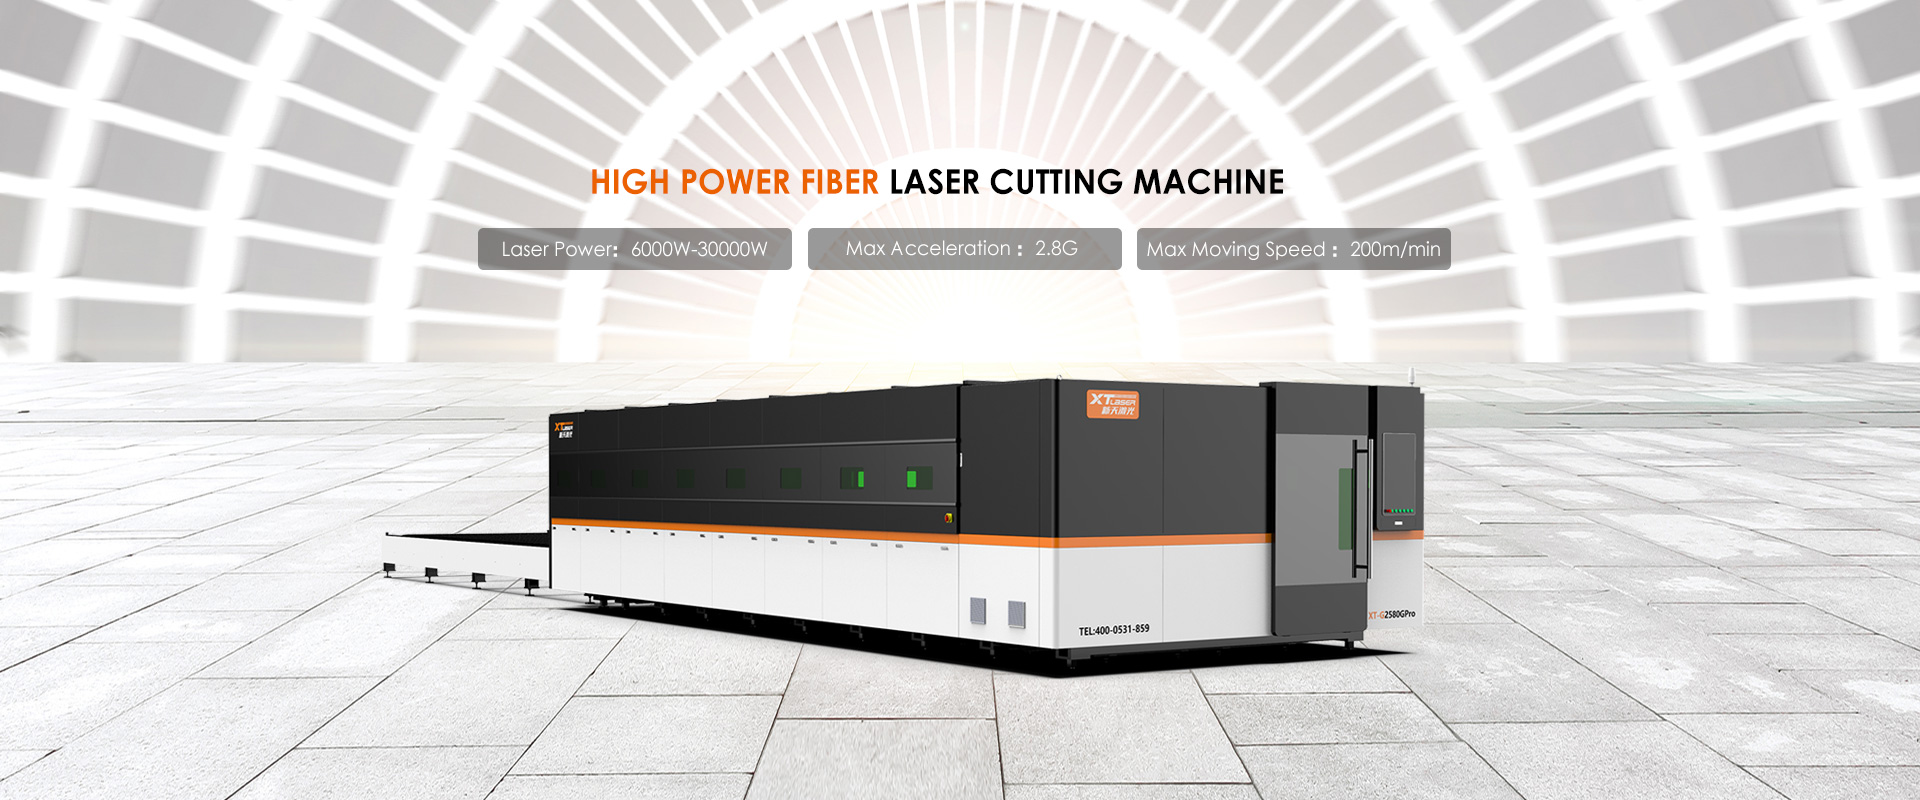 Fabrică de mașini de tăiat cu laser cu fibre de mare putere